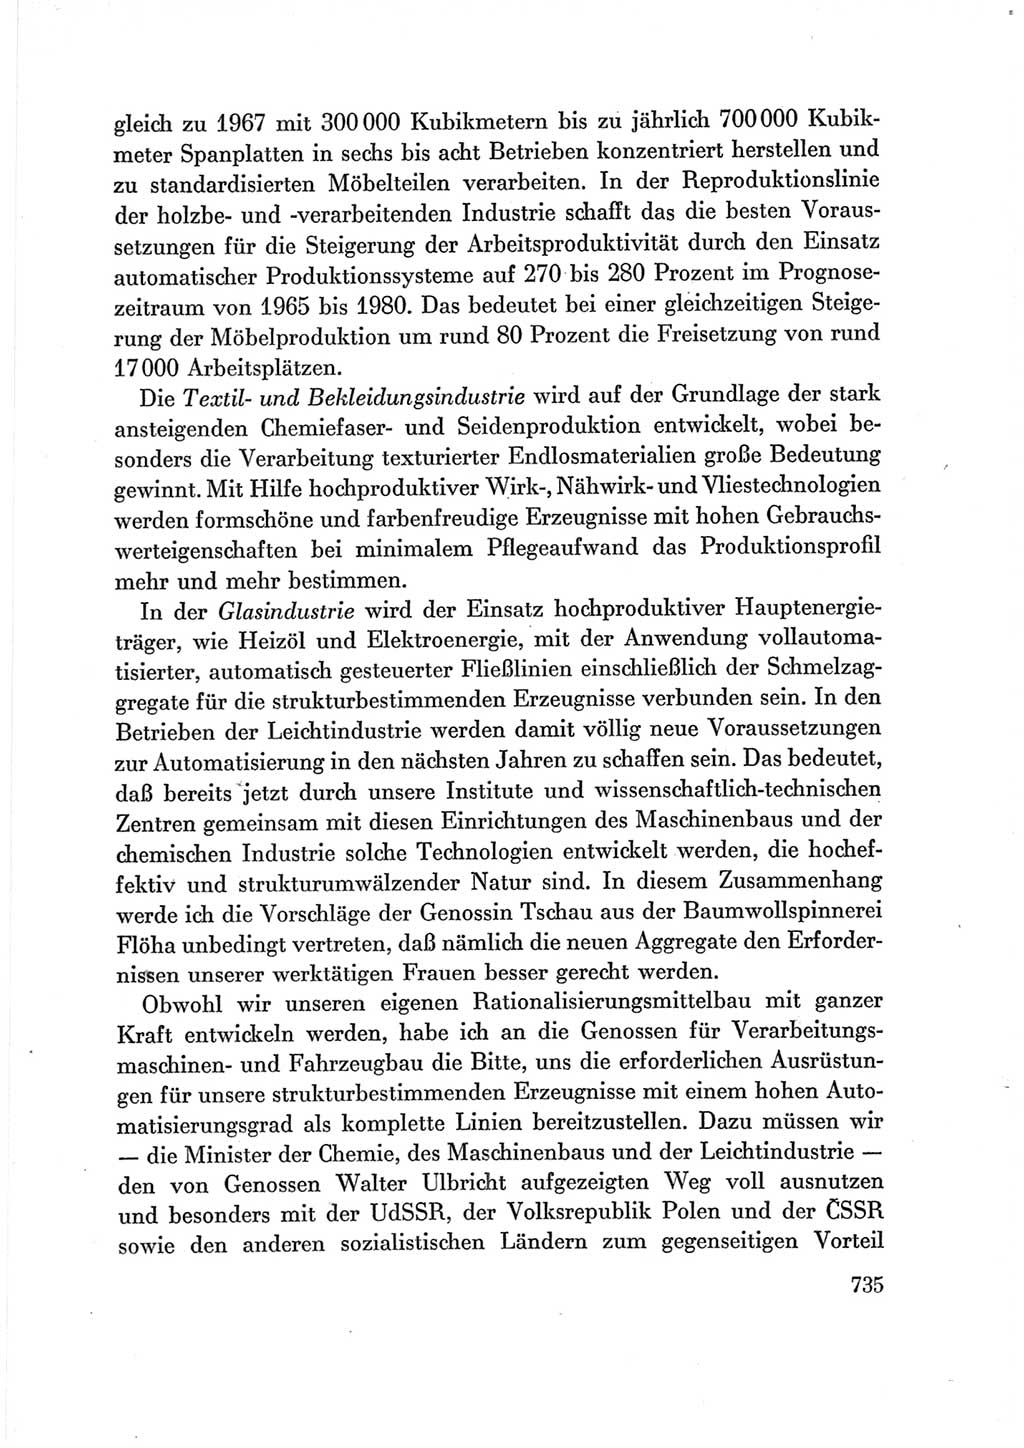 Protokoll der Verhandlungen des Ⅶ. Parteitages der Sozialistischen Einheitspartei Deutschlands (SED) [Deutsche Demokratische Republik (DDR)] 1967, Band Ⅲ, Seite 735 (Prot. Verh. Ⅶ. PT SED DDR 1967, Bd. Ⅲ, S. 735)